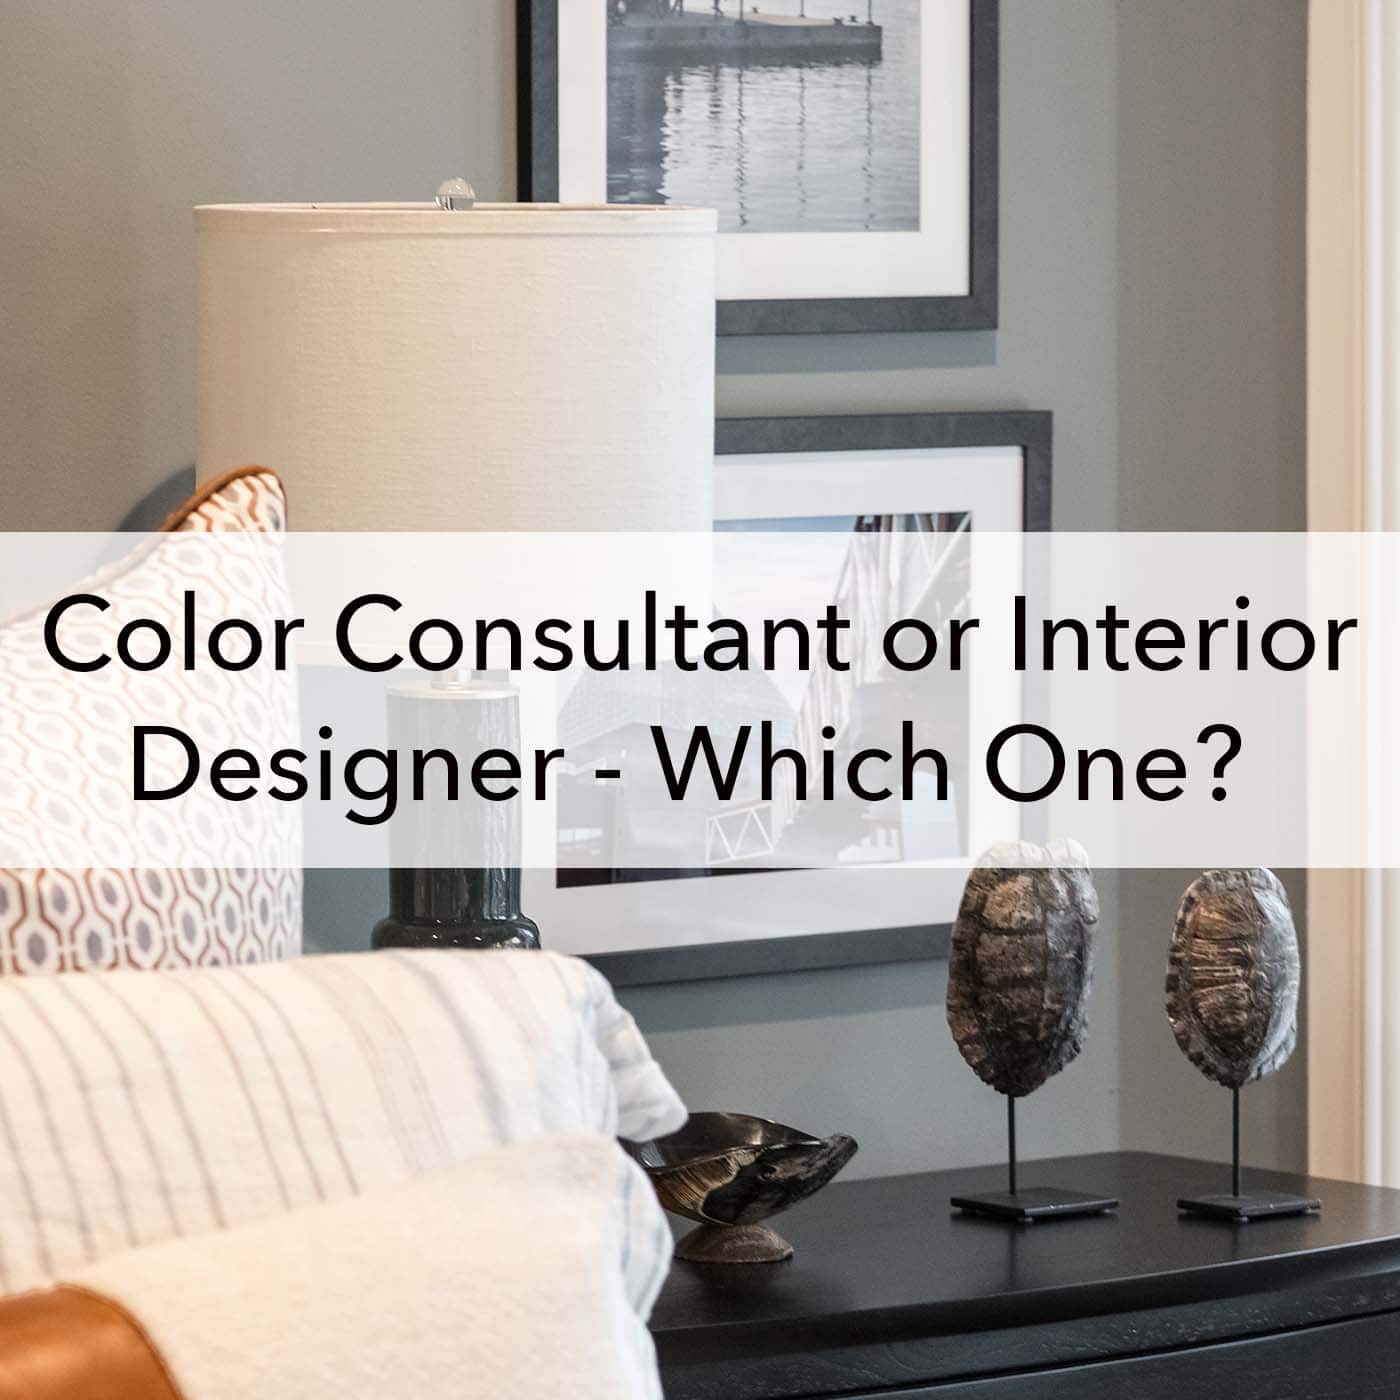 Color consultant or interior designer, blog